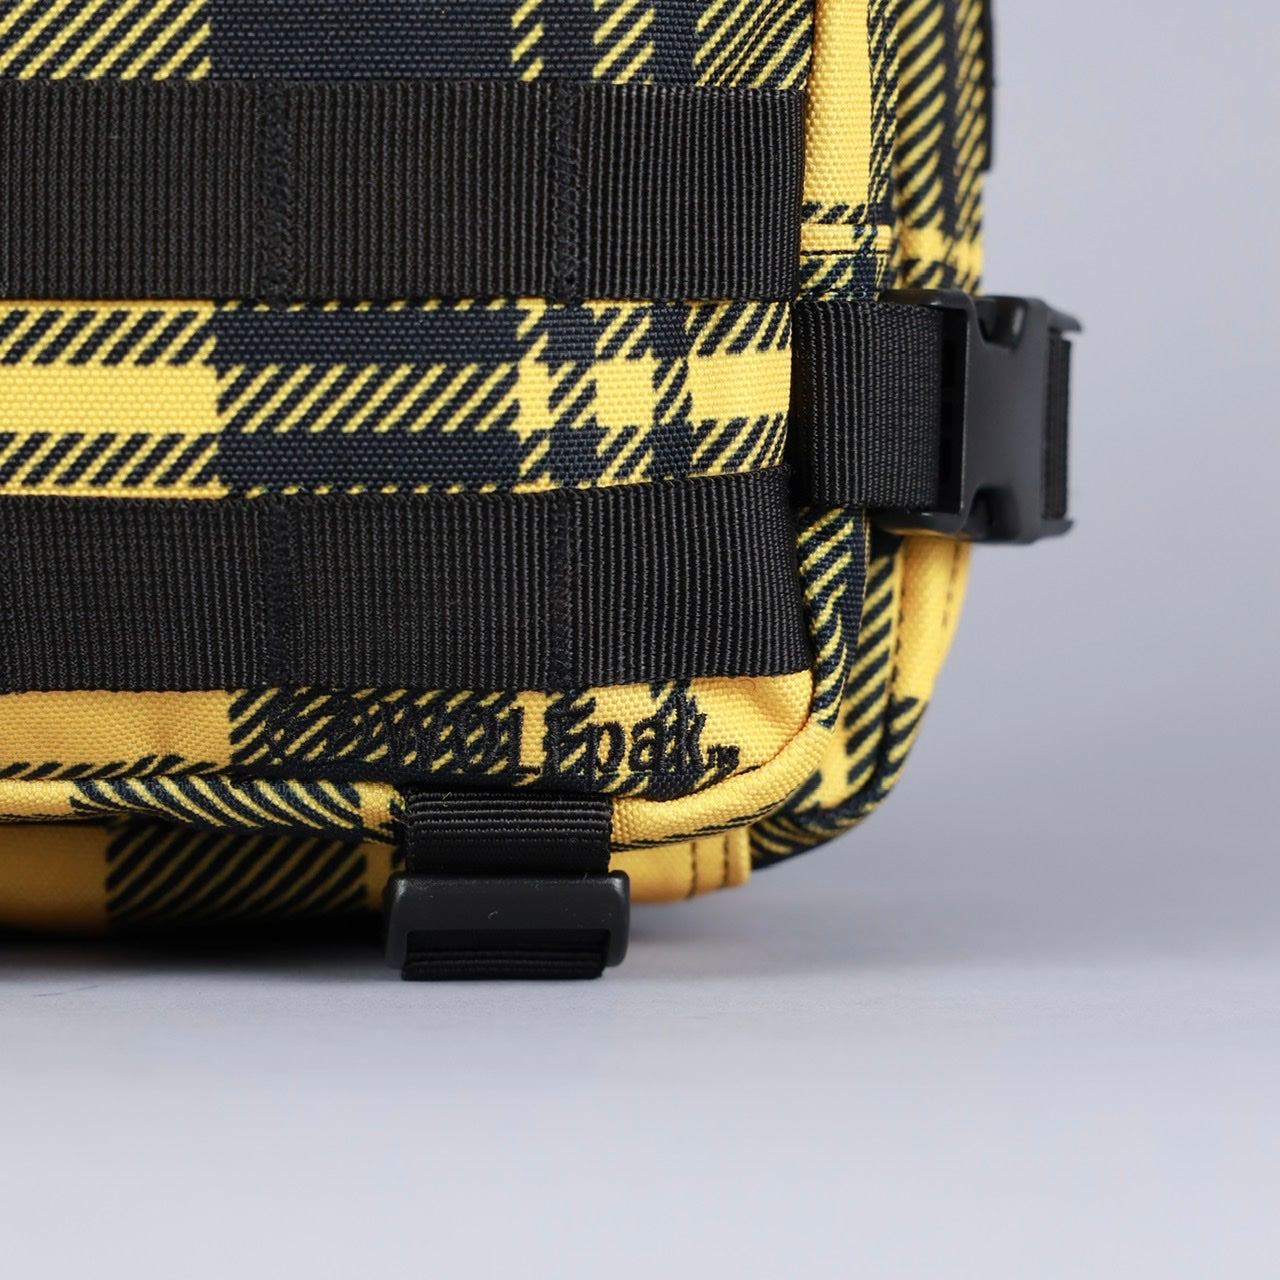 9L Backpack Mini Bumblebee Yellow Plaid